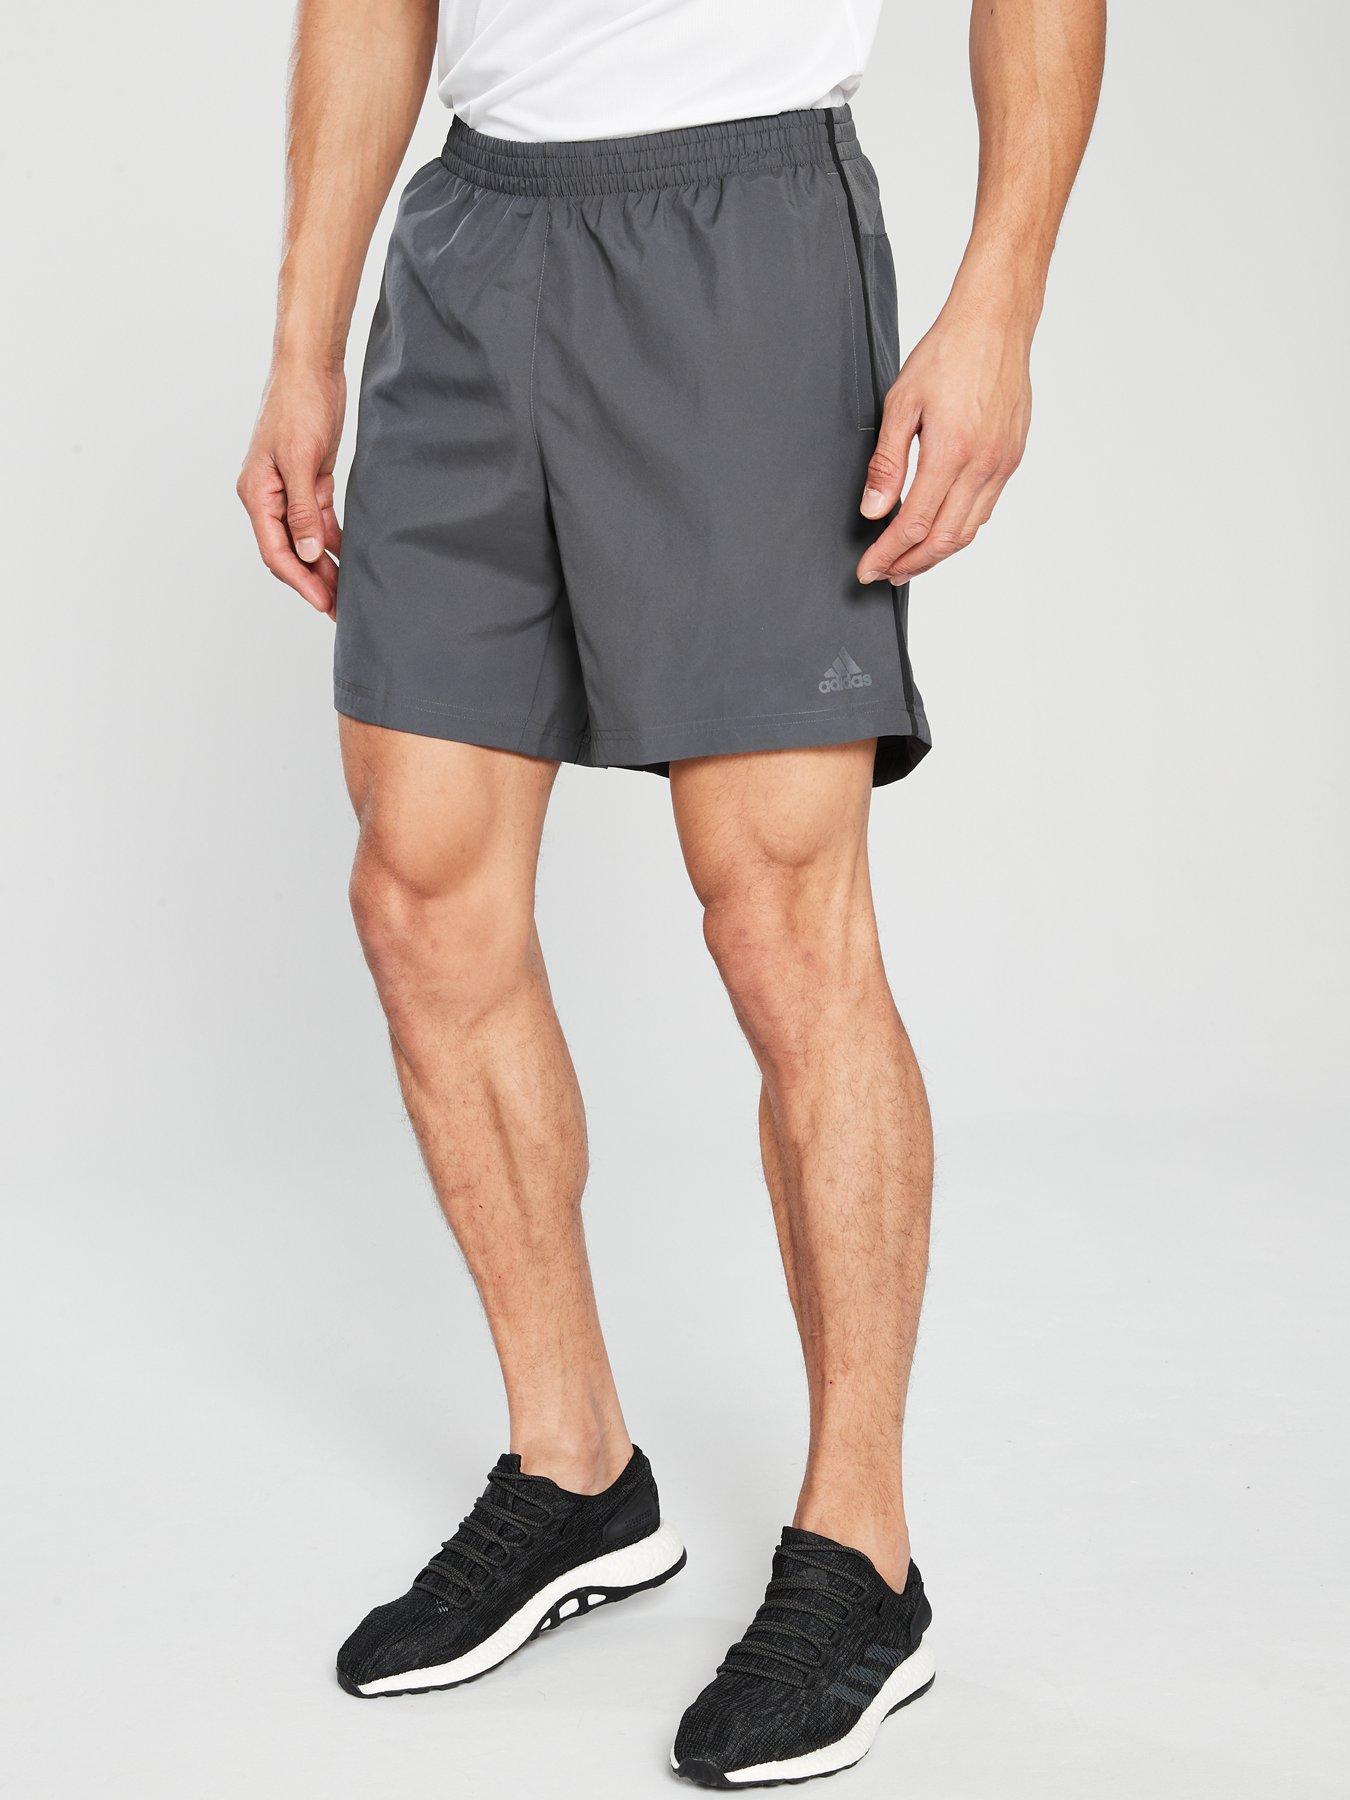 adidas running shorts 7 inch